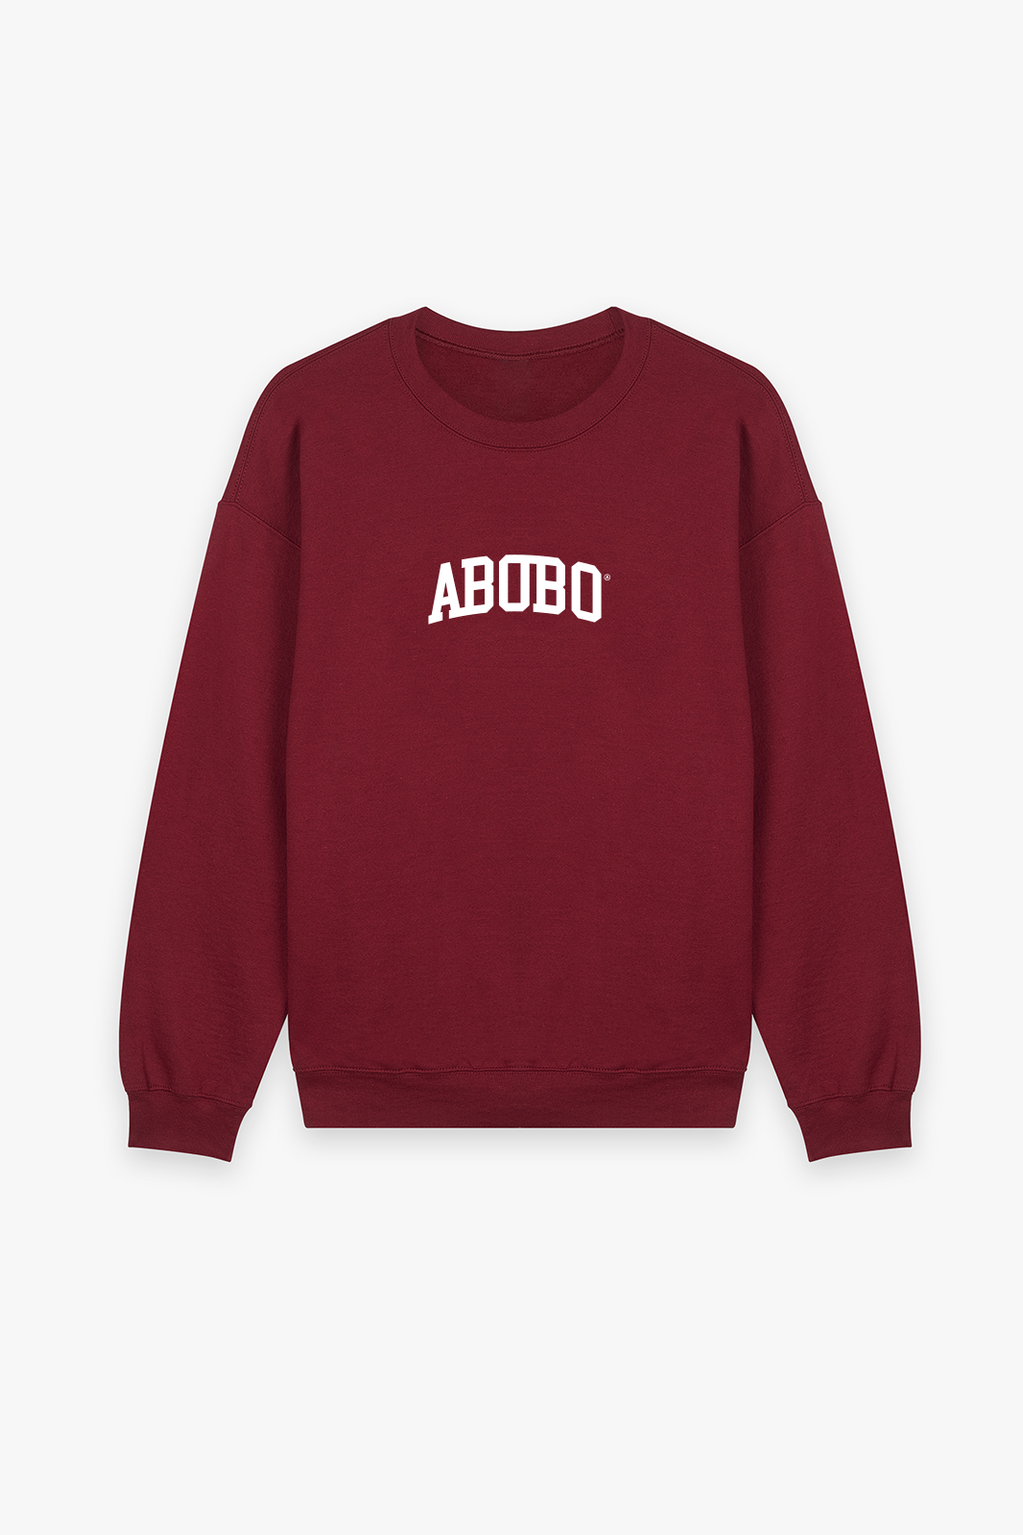 Abobo Sweatshirt Bordeaux